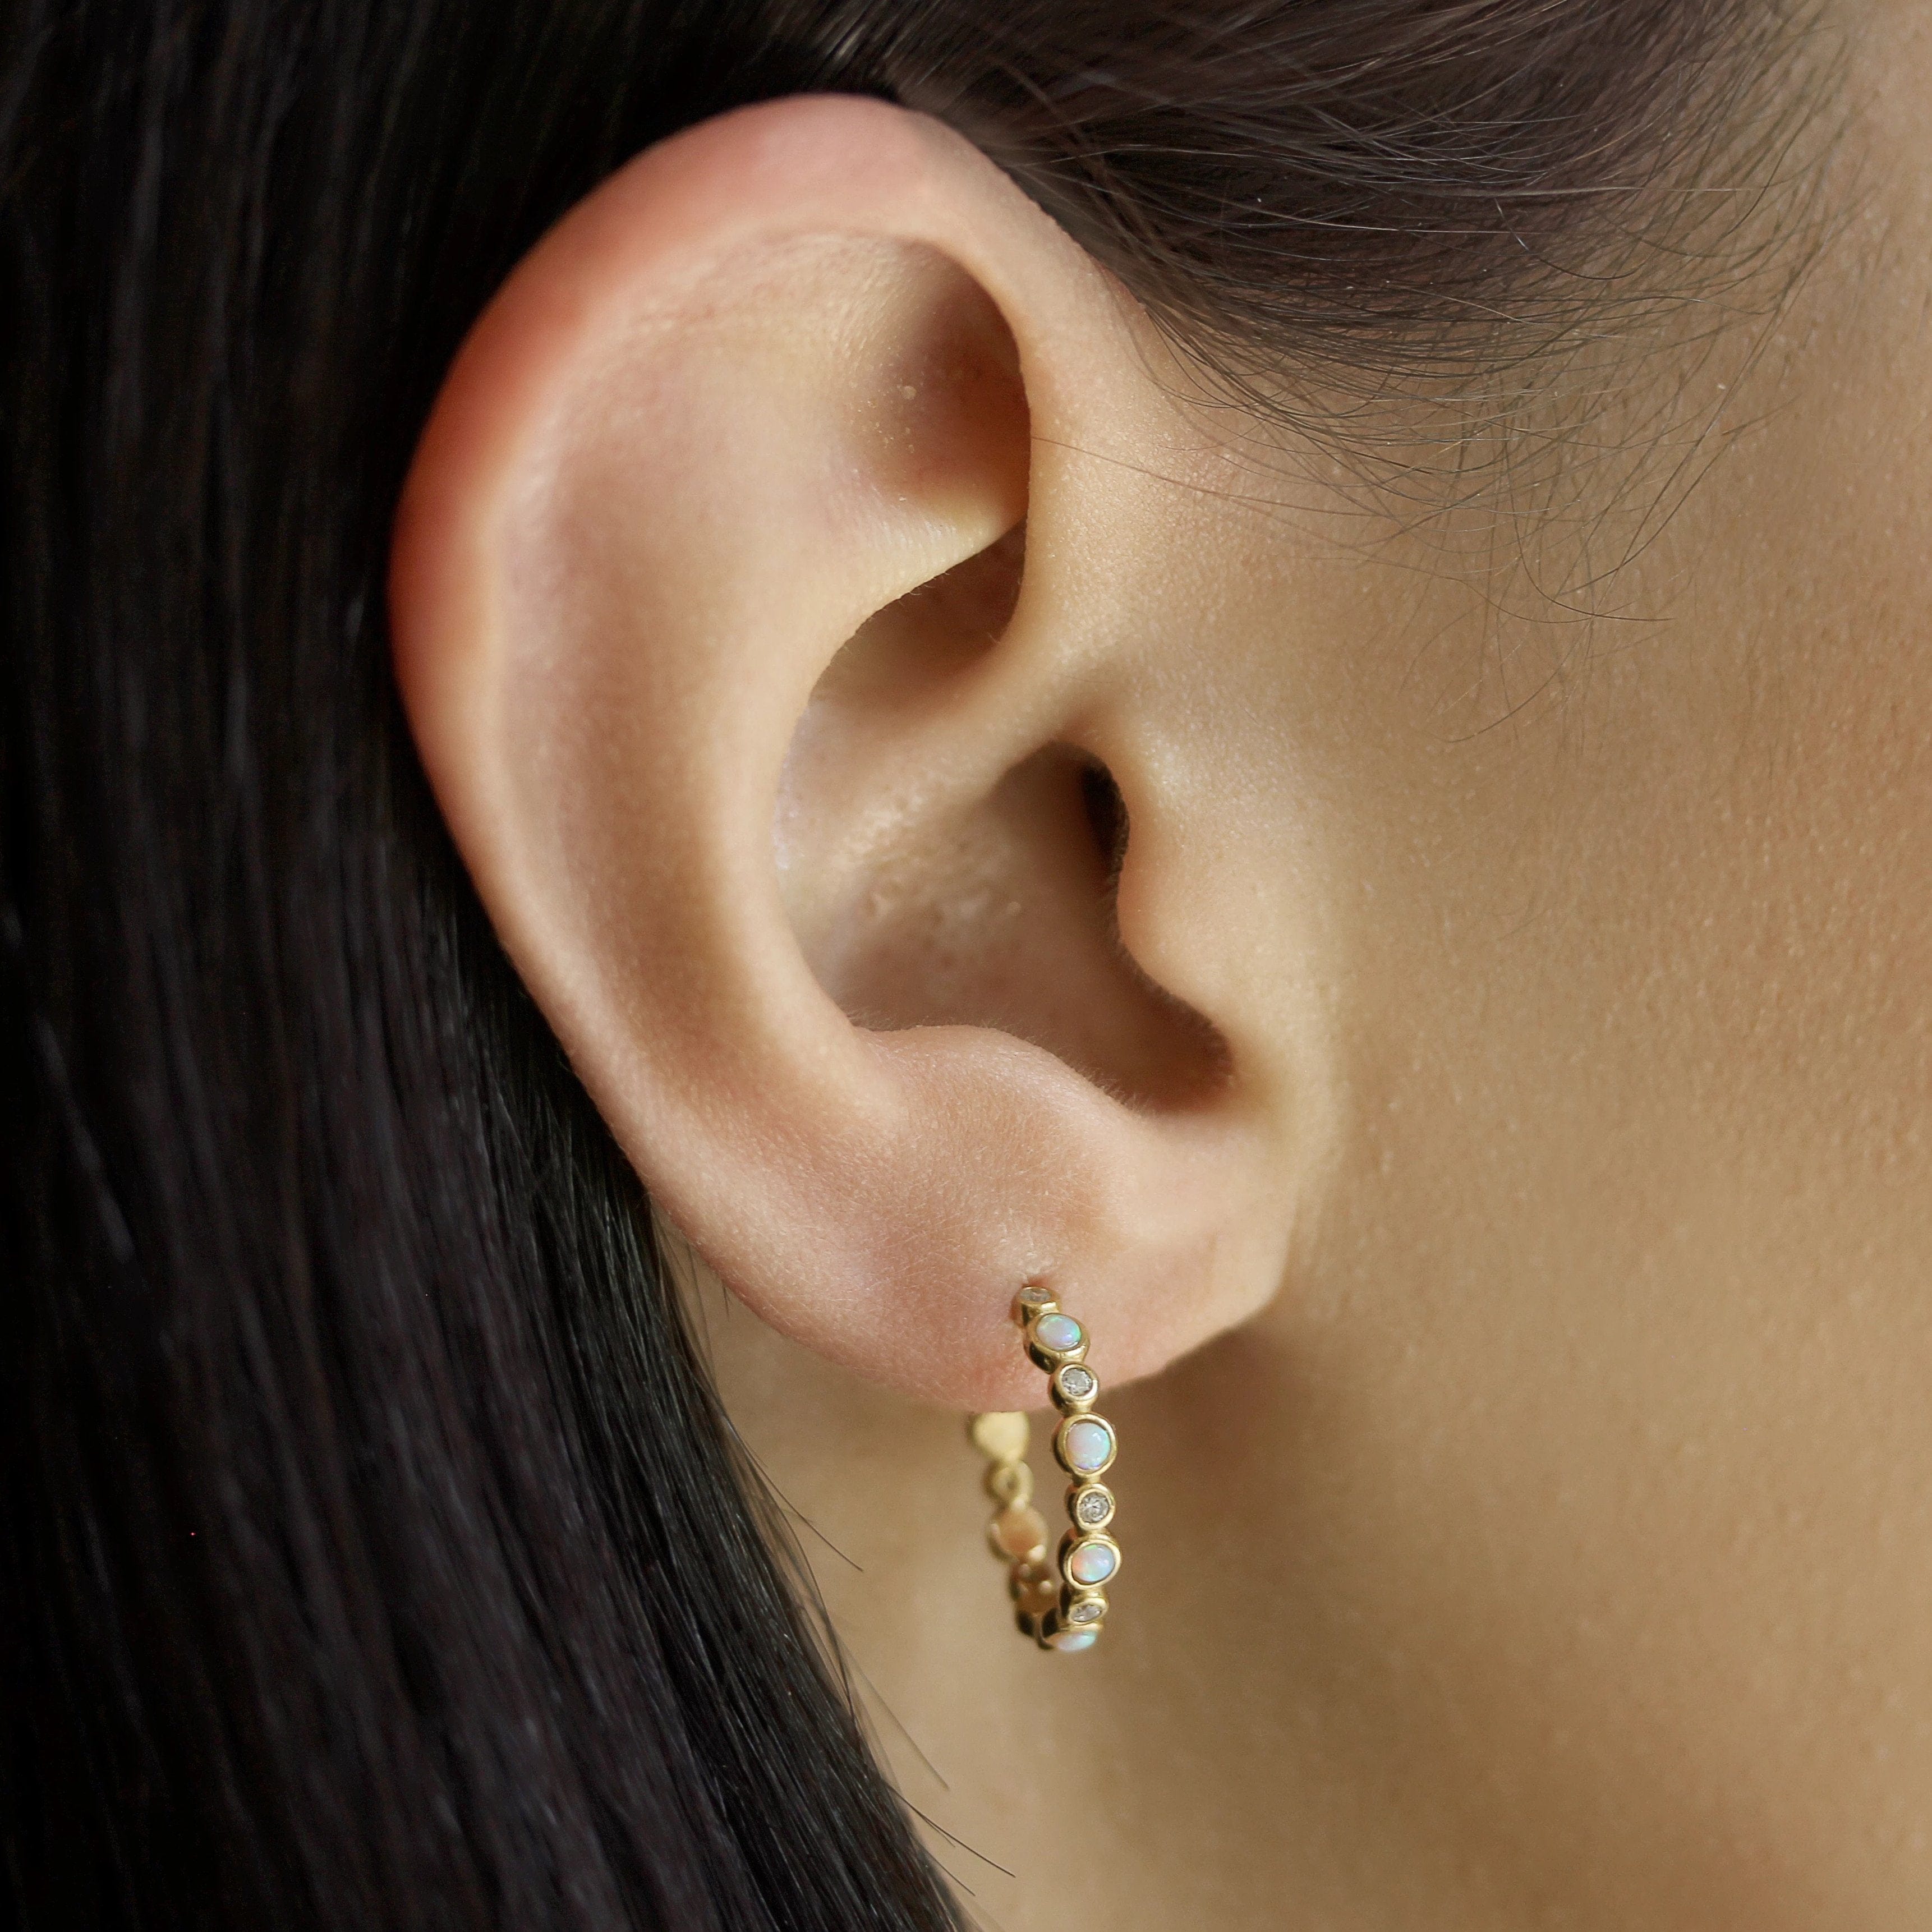 TAI JEWELRY Earrings Opal Gold Vermeil Hoops